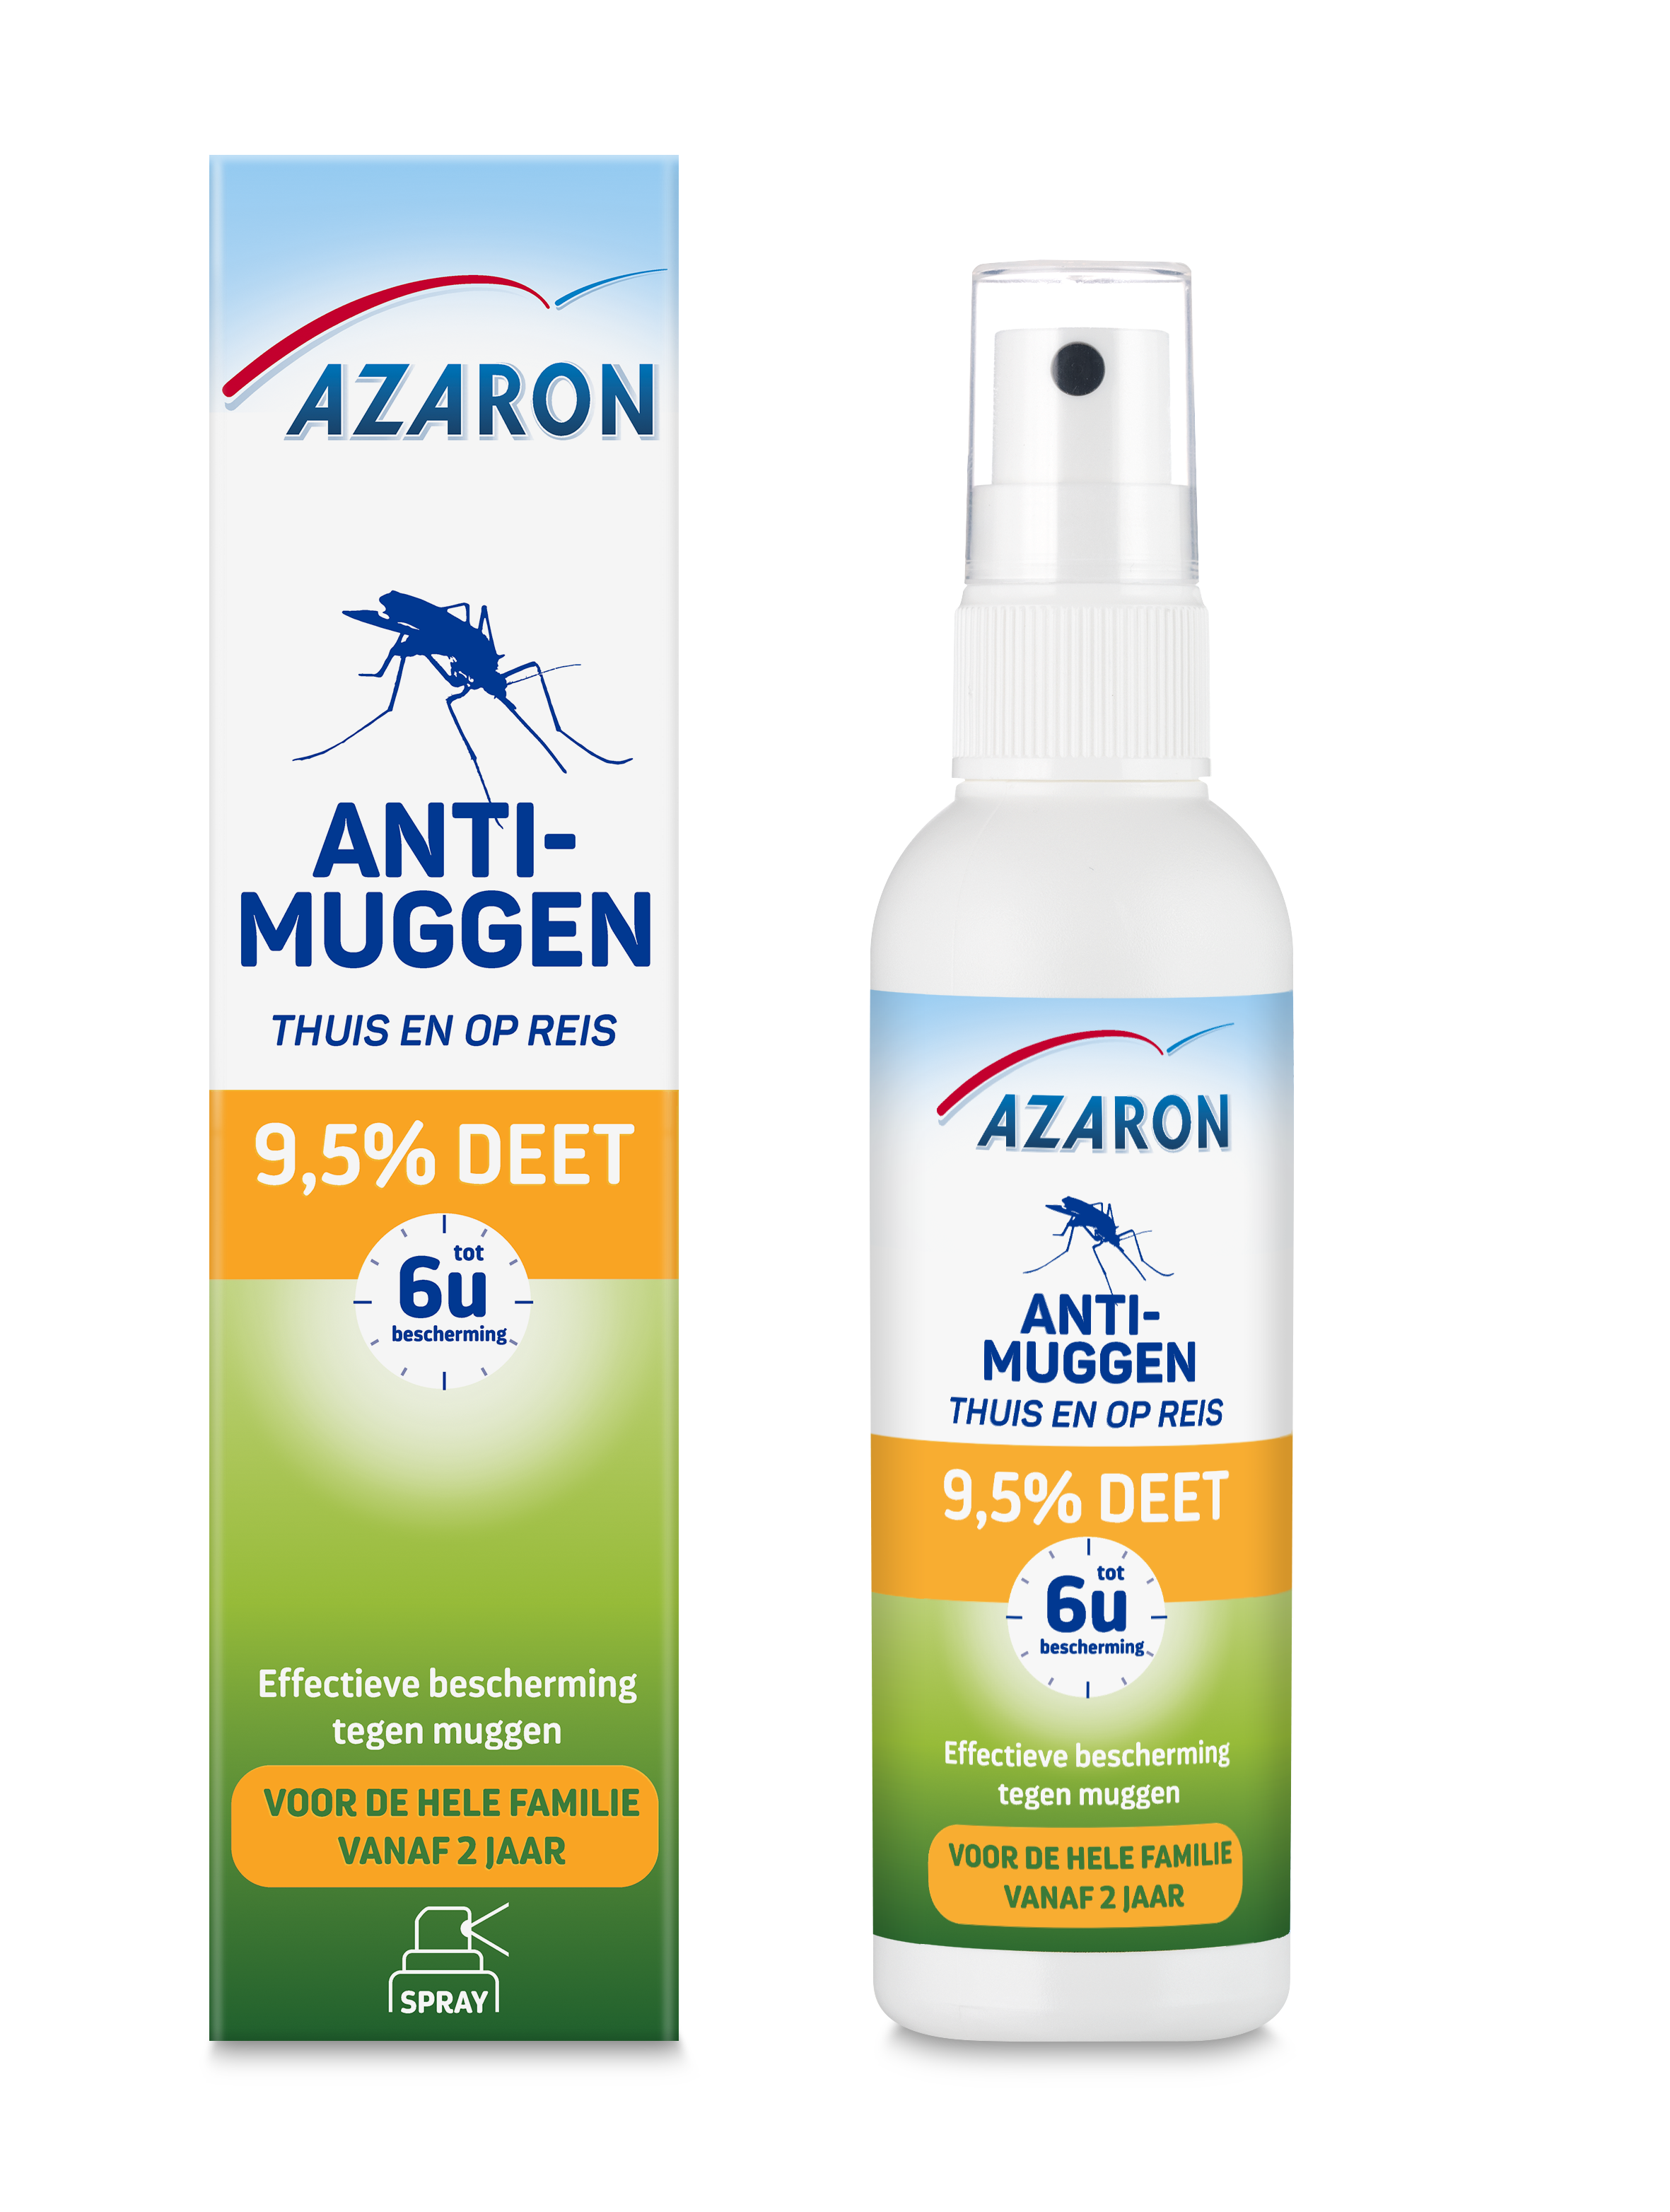 Azaron Anti-Muggen 9,5% DEET Spray<sup>3</sup>